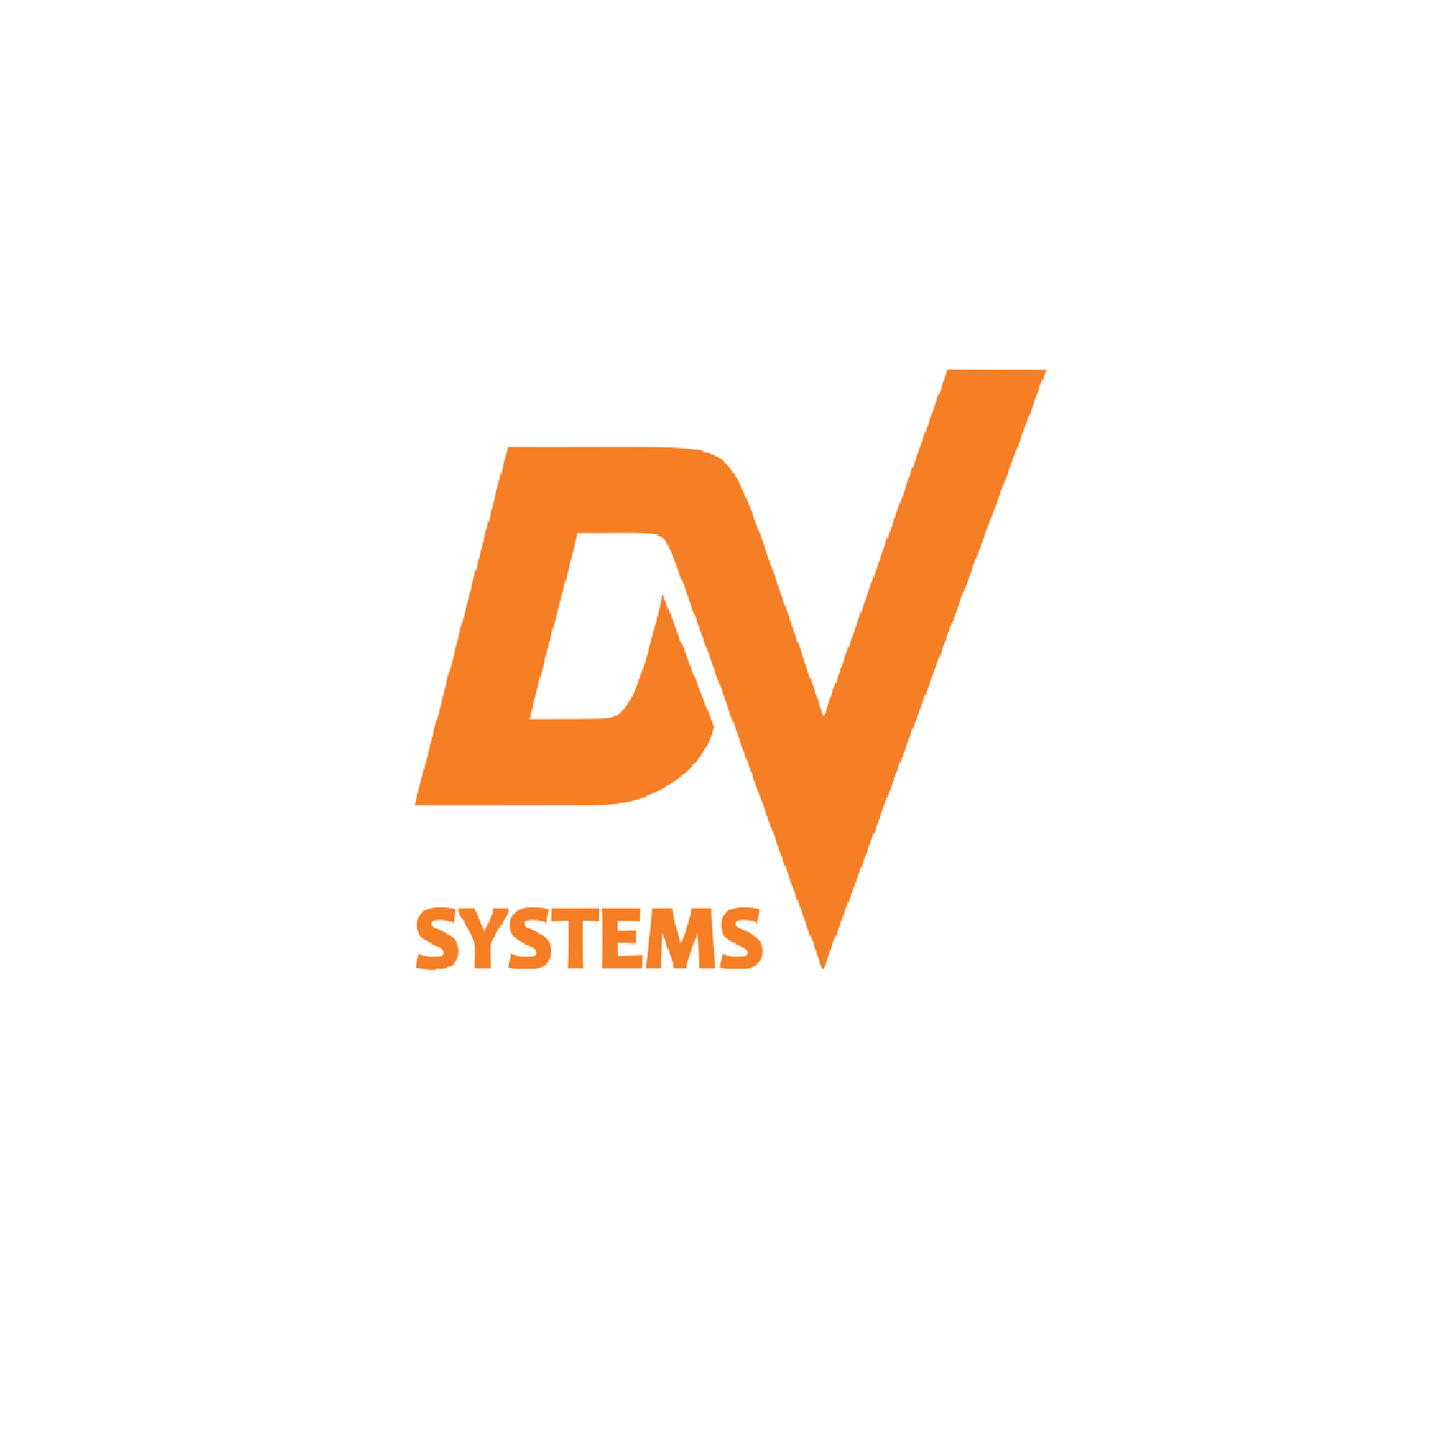 Dsc-001467 inverter 575v 30hp dv systems